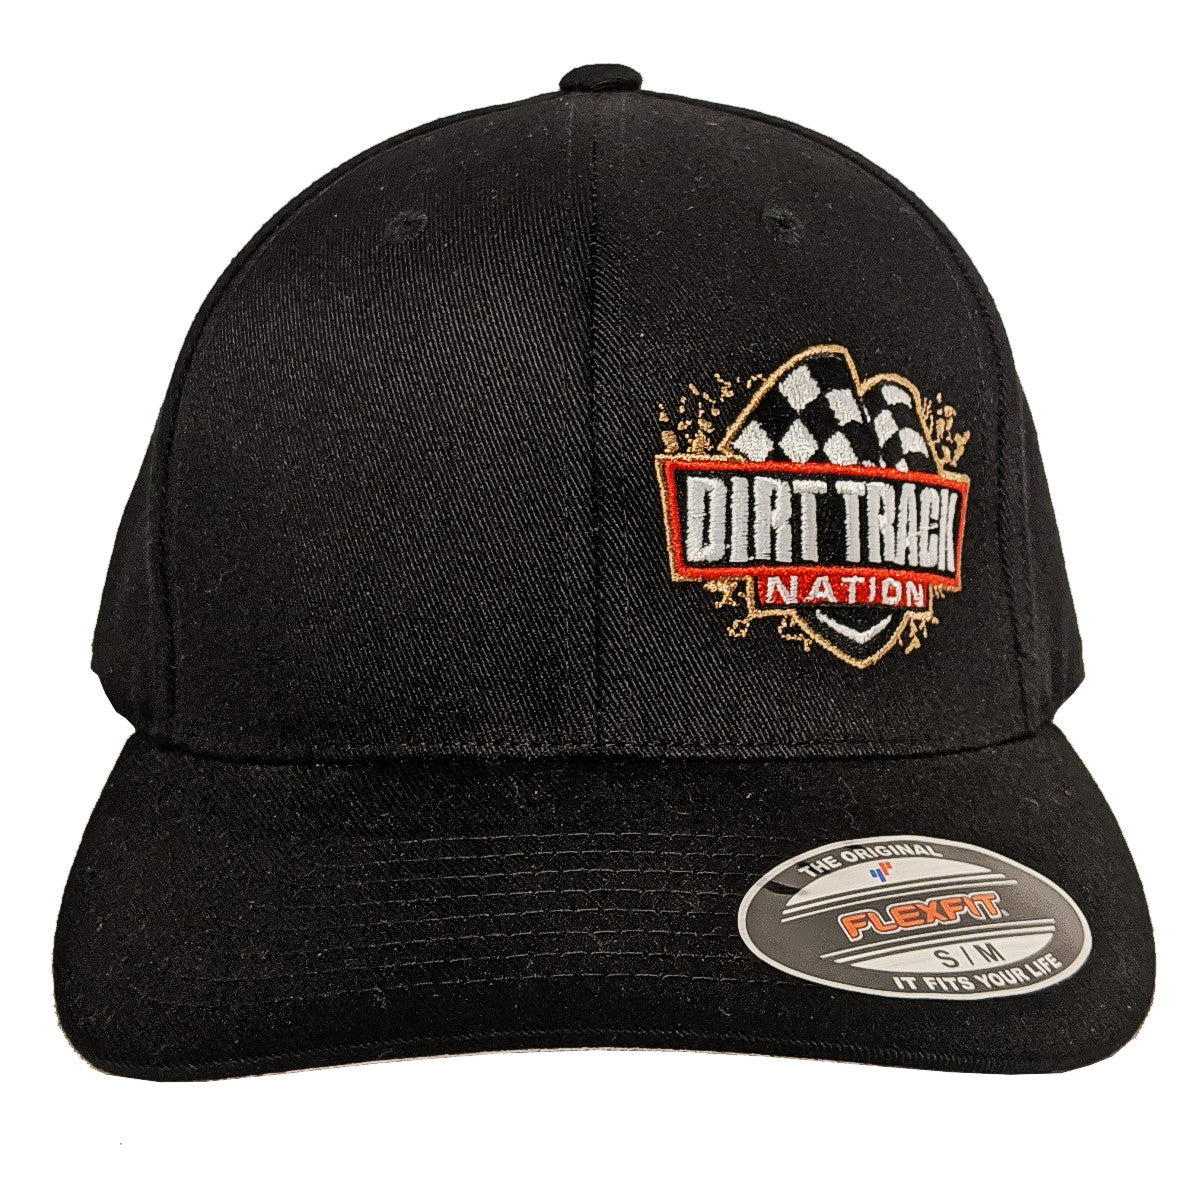 Dirt Track Nation Black Hat Flex-Fit